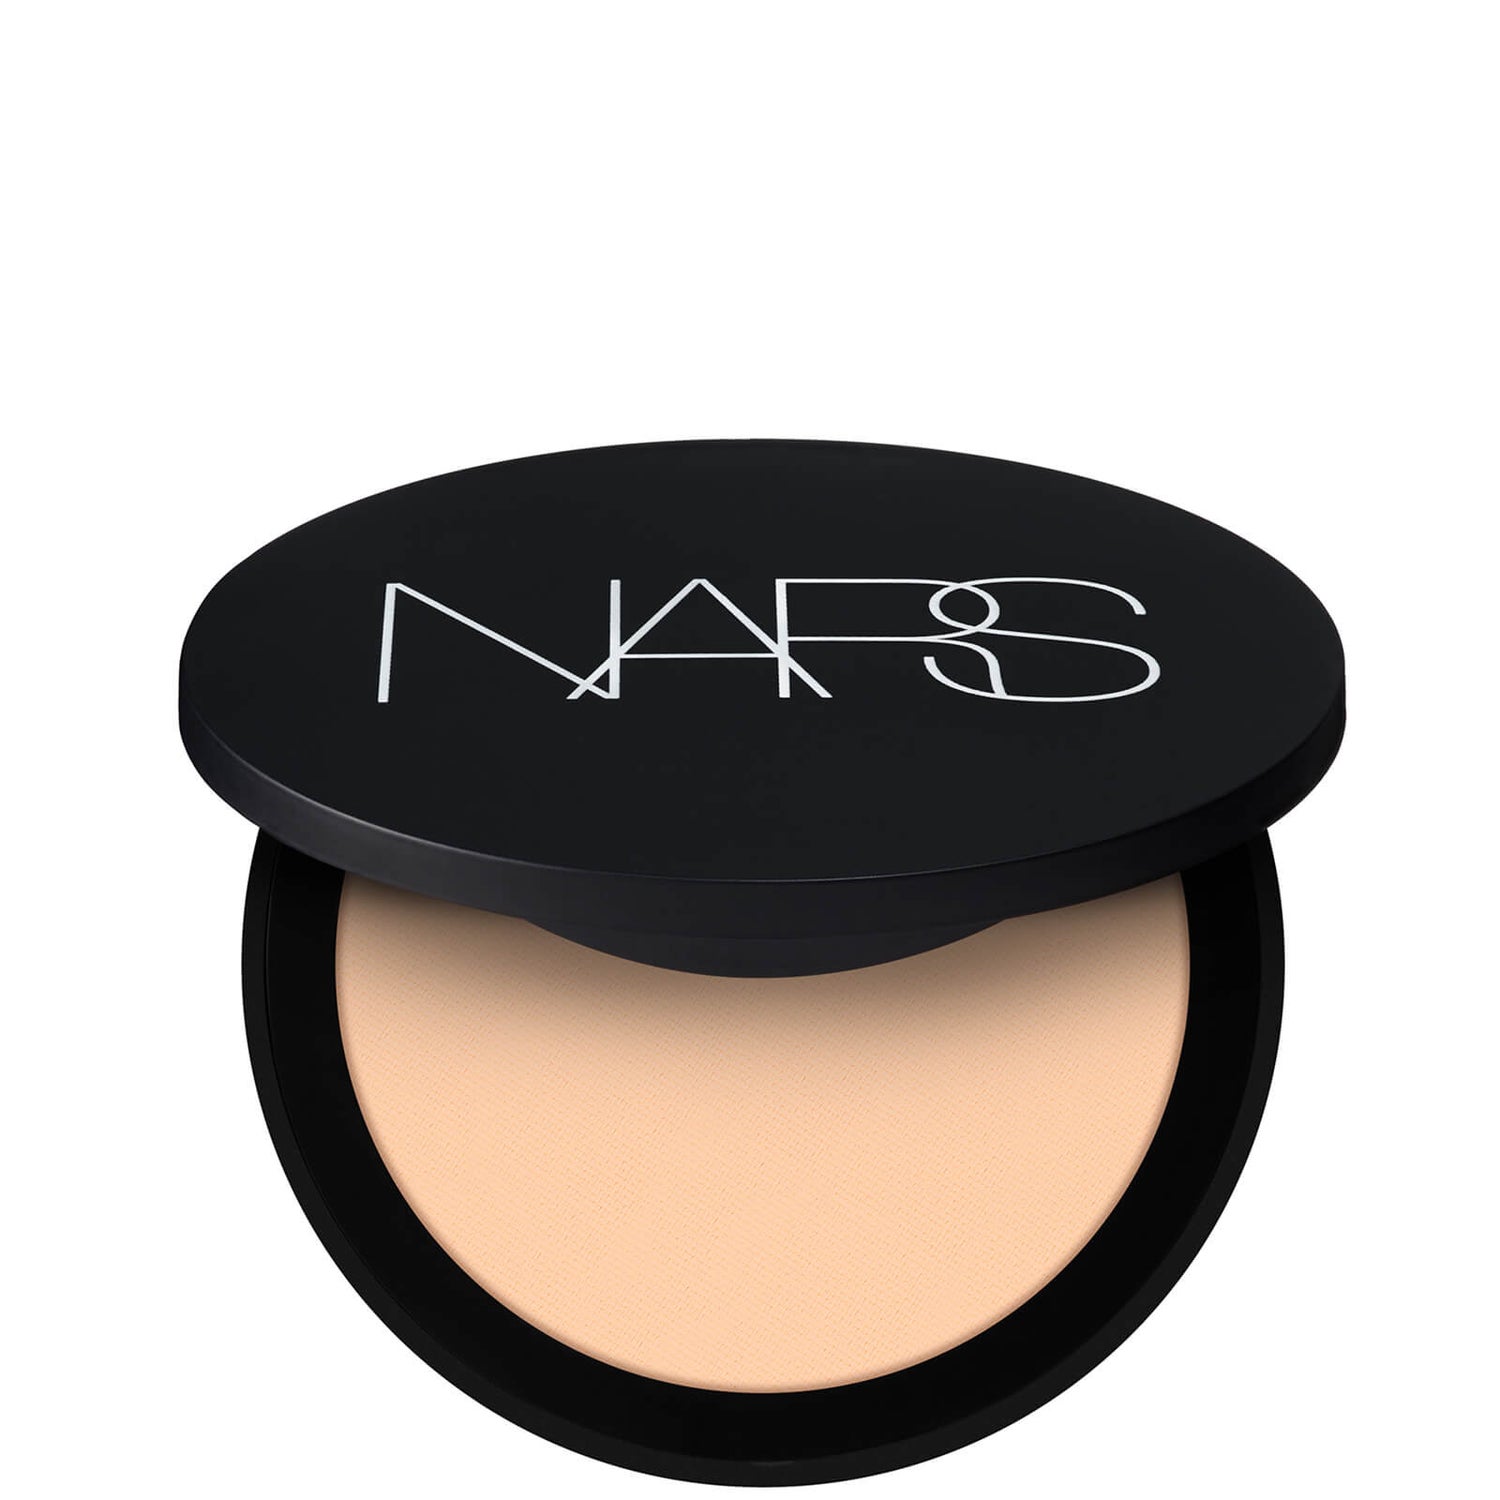 NARS Soft Matte Powder 9g (Various Shades)